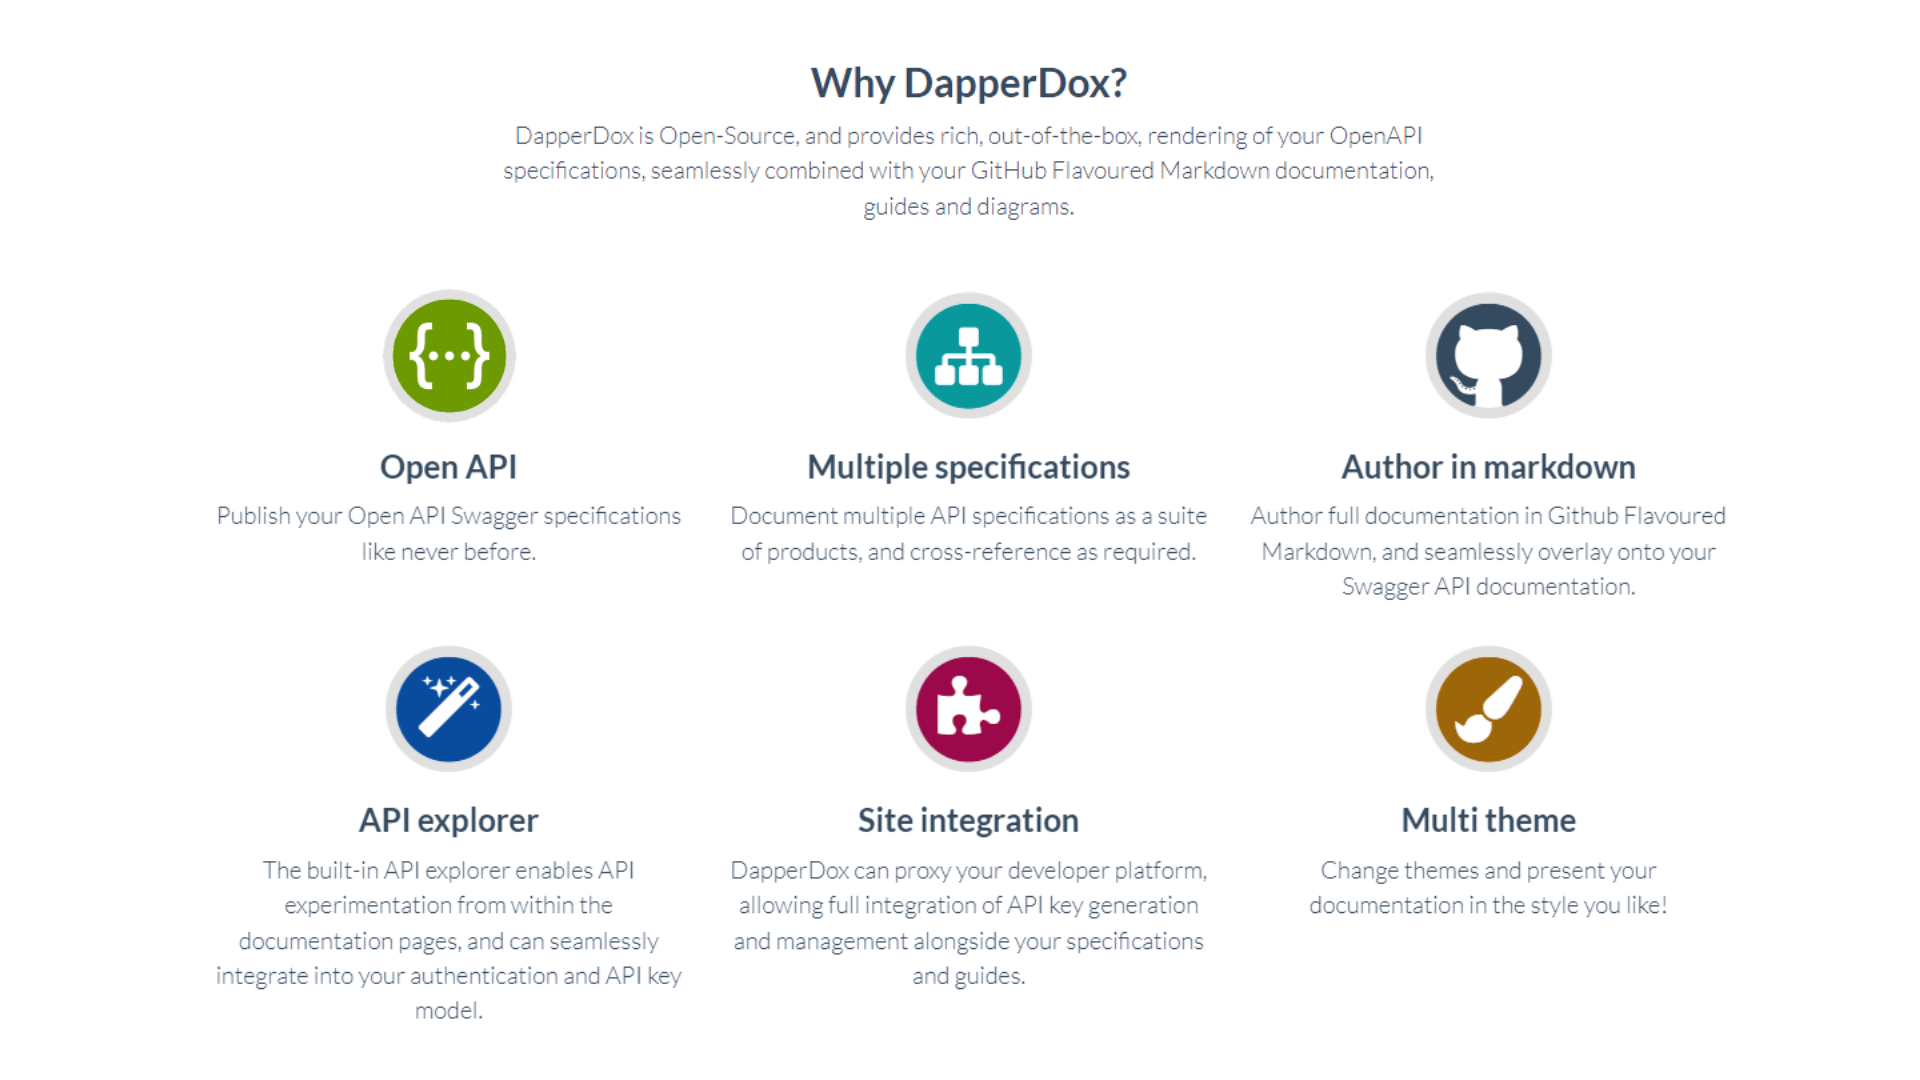 DapperDox Features